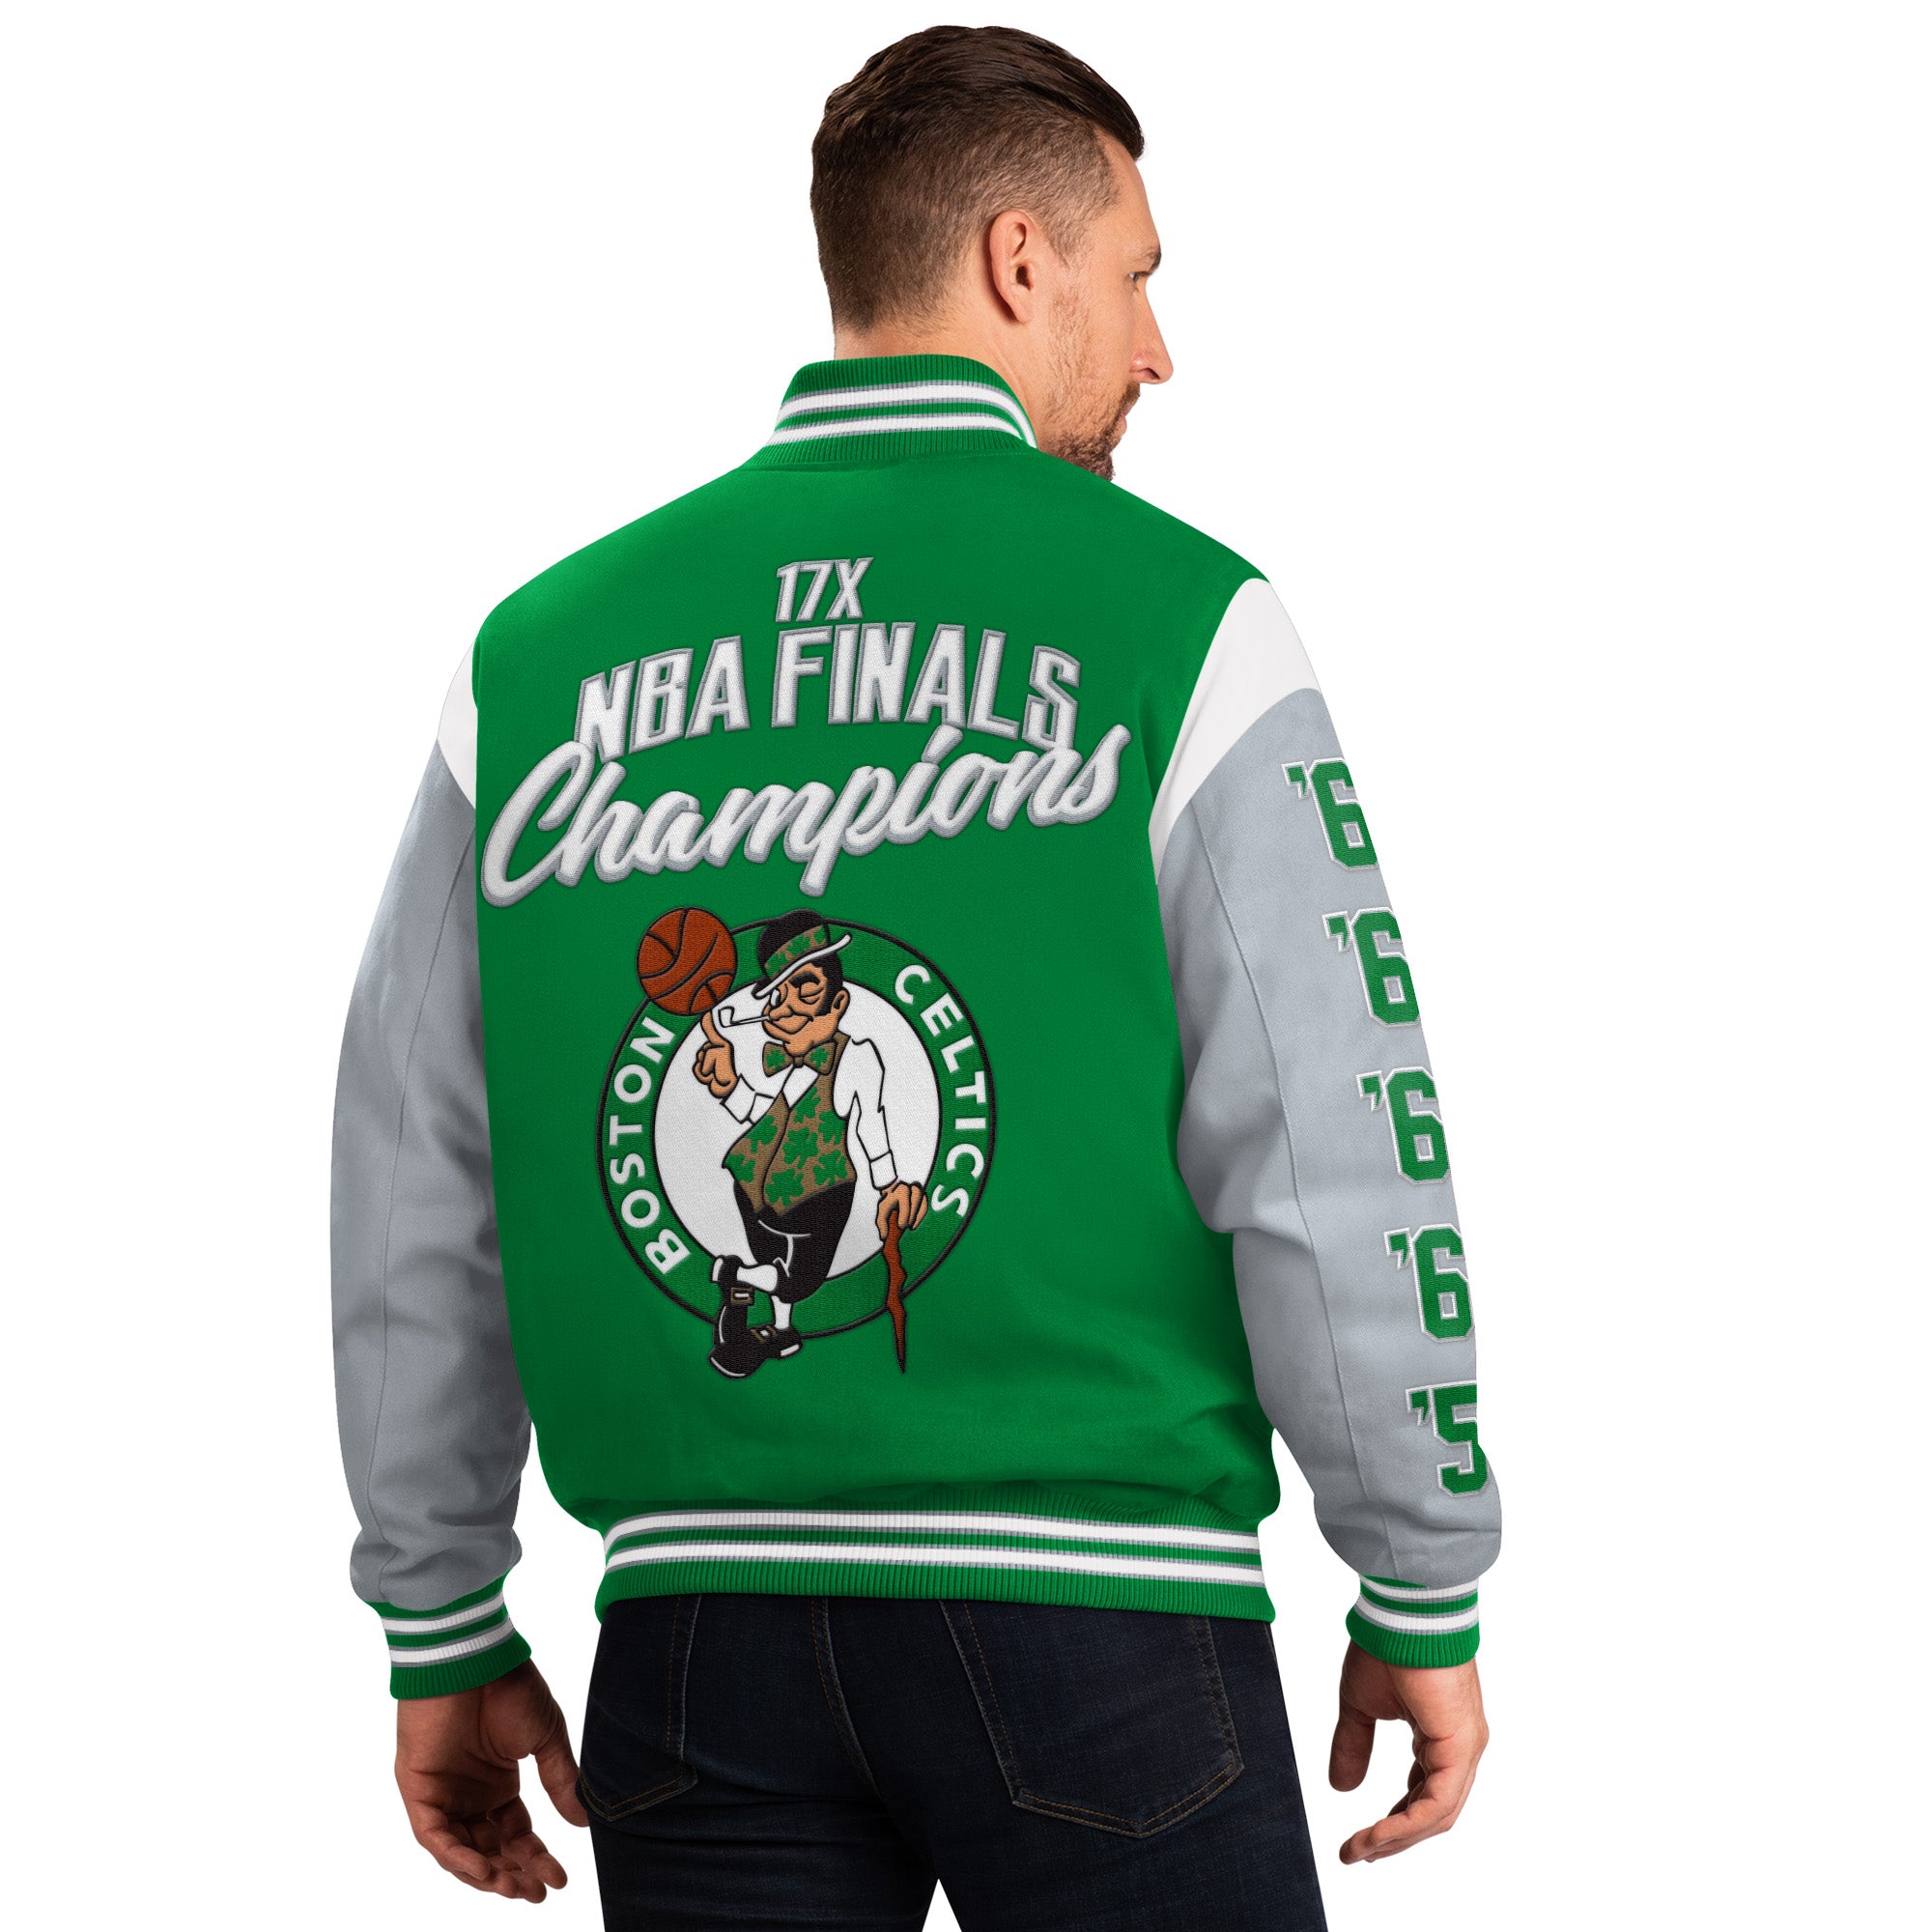 Boston Celtics G-III Franchise 17 Time Championship Varsity Jacket